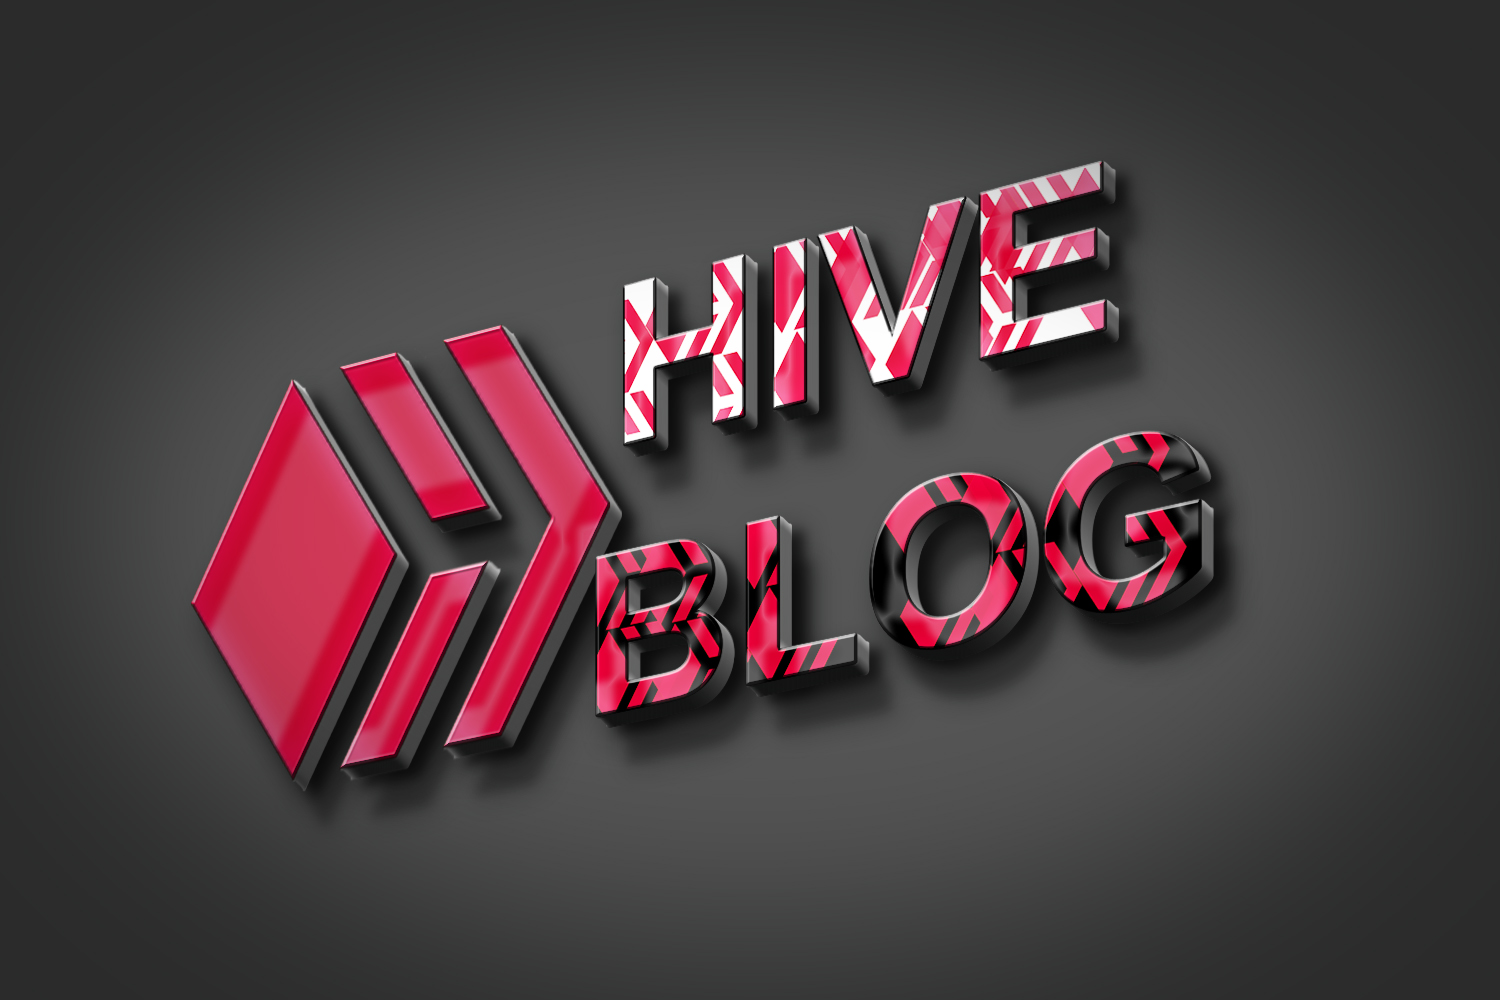 hive 2.jpg